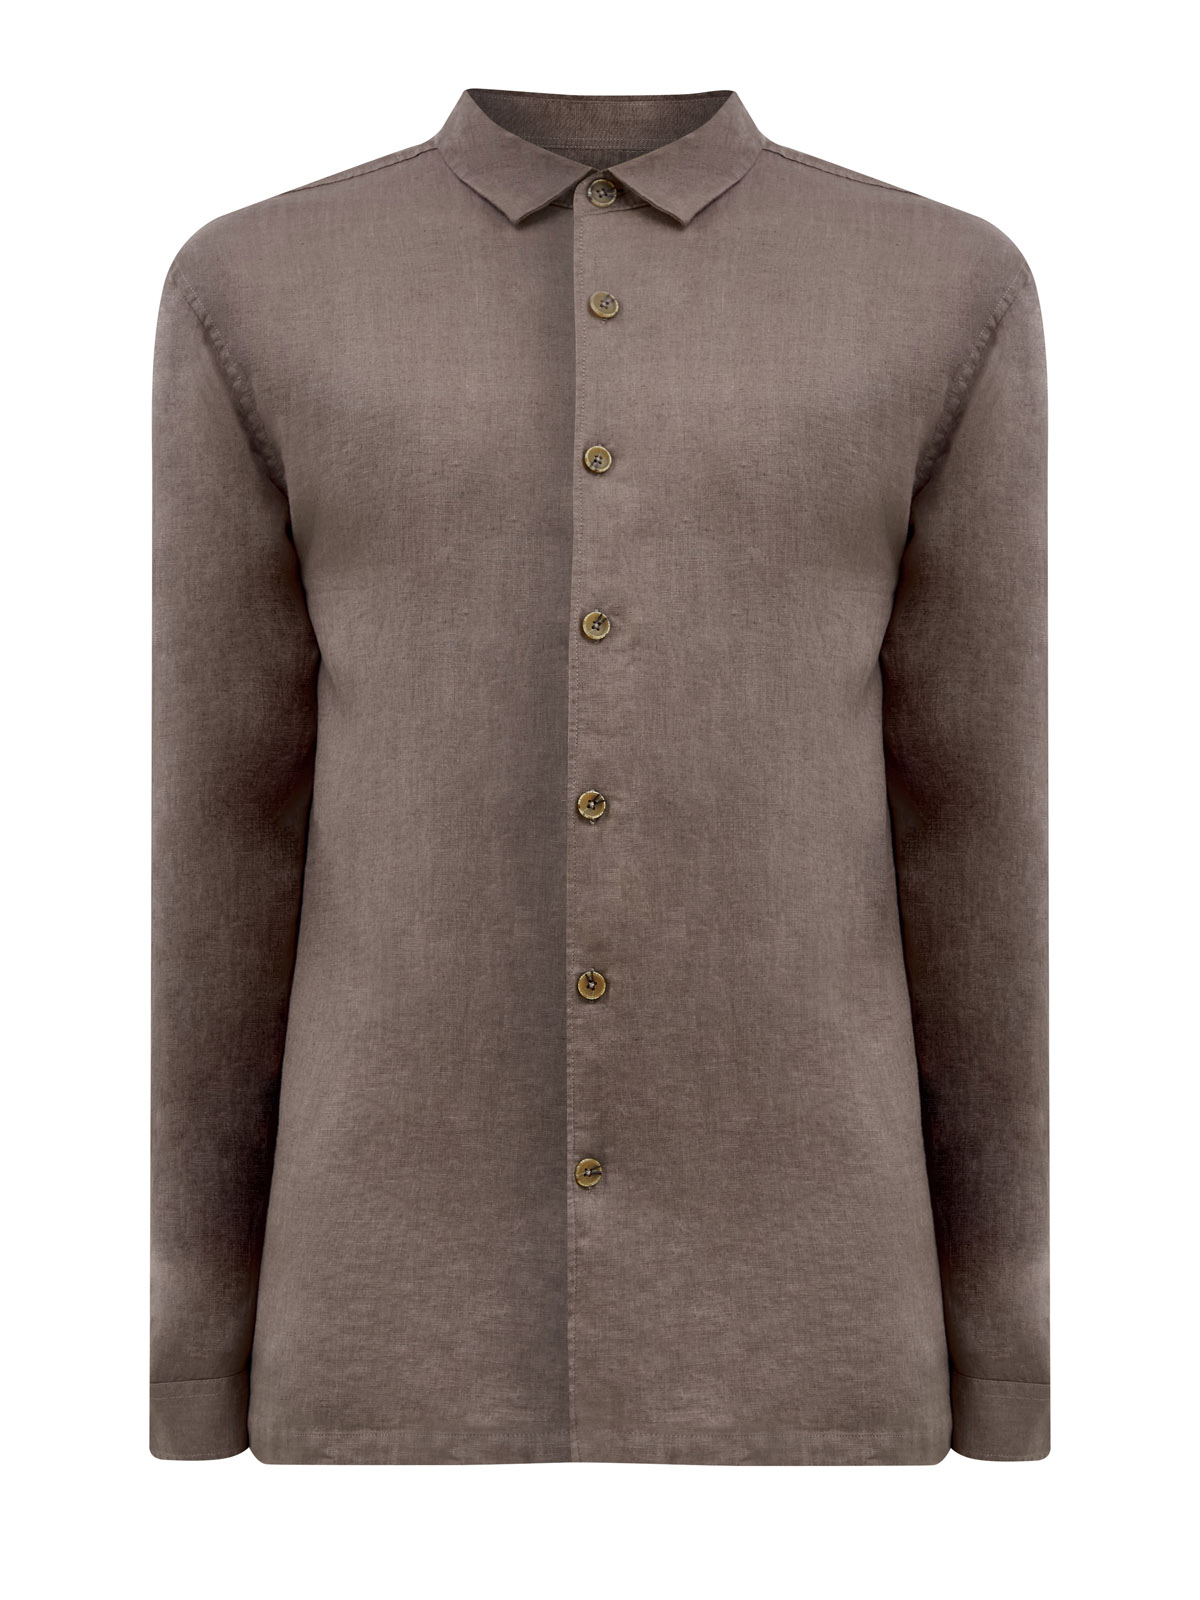 Однотонная рубашка свободного кроя из льняной ткани CUDGI, цвет коричневый, размер 56